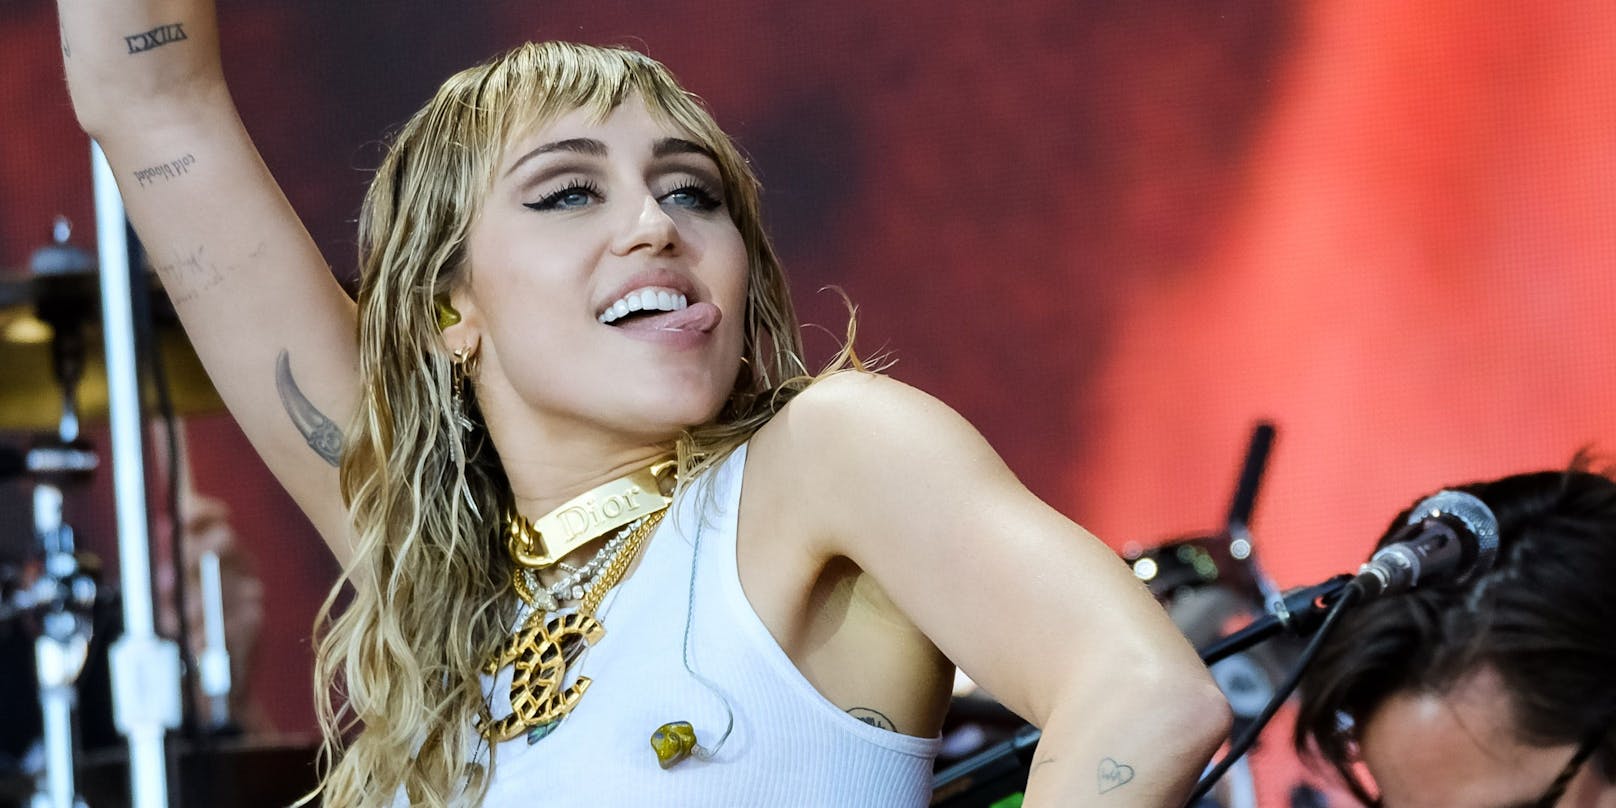 Popsängerin <strong>Miley Cyrus</strong>, bekannt für ihre knappen Bühnen-Outfits, verzichtet auch beim Einkaufen auf Unterwäsche.<br>